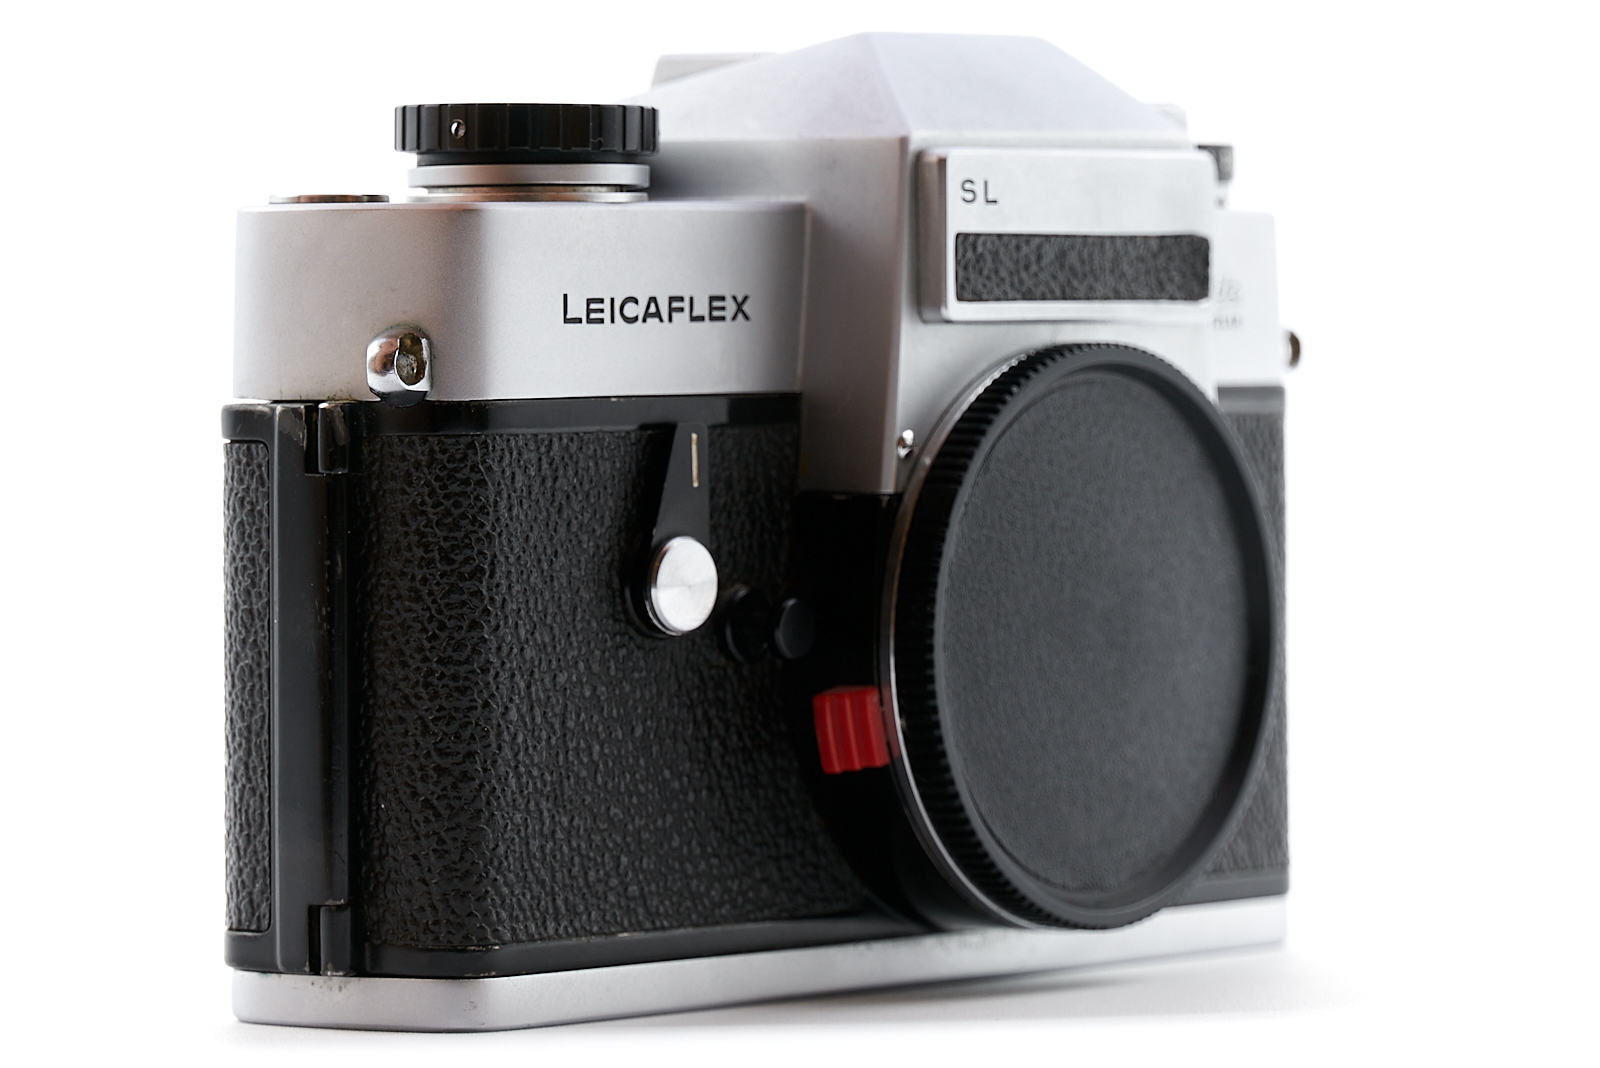 Leicaflex SL silver